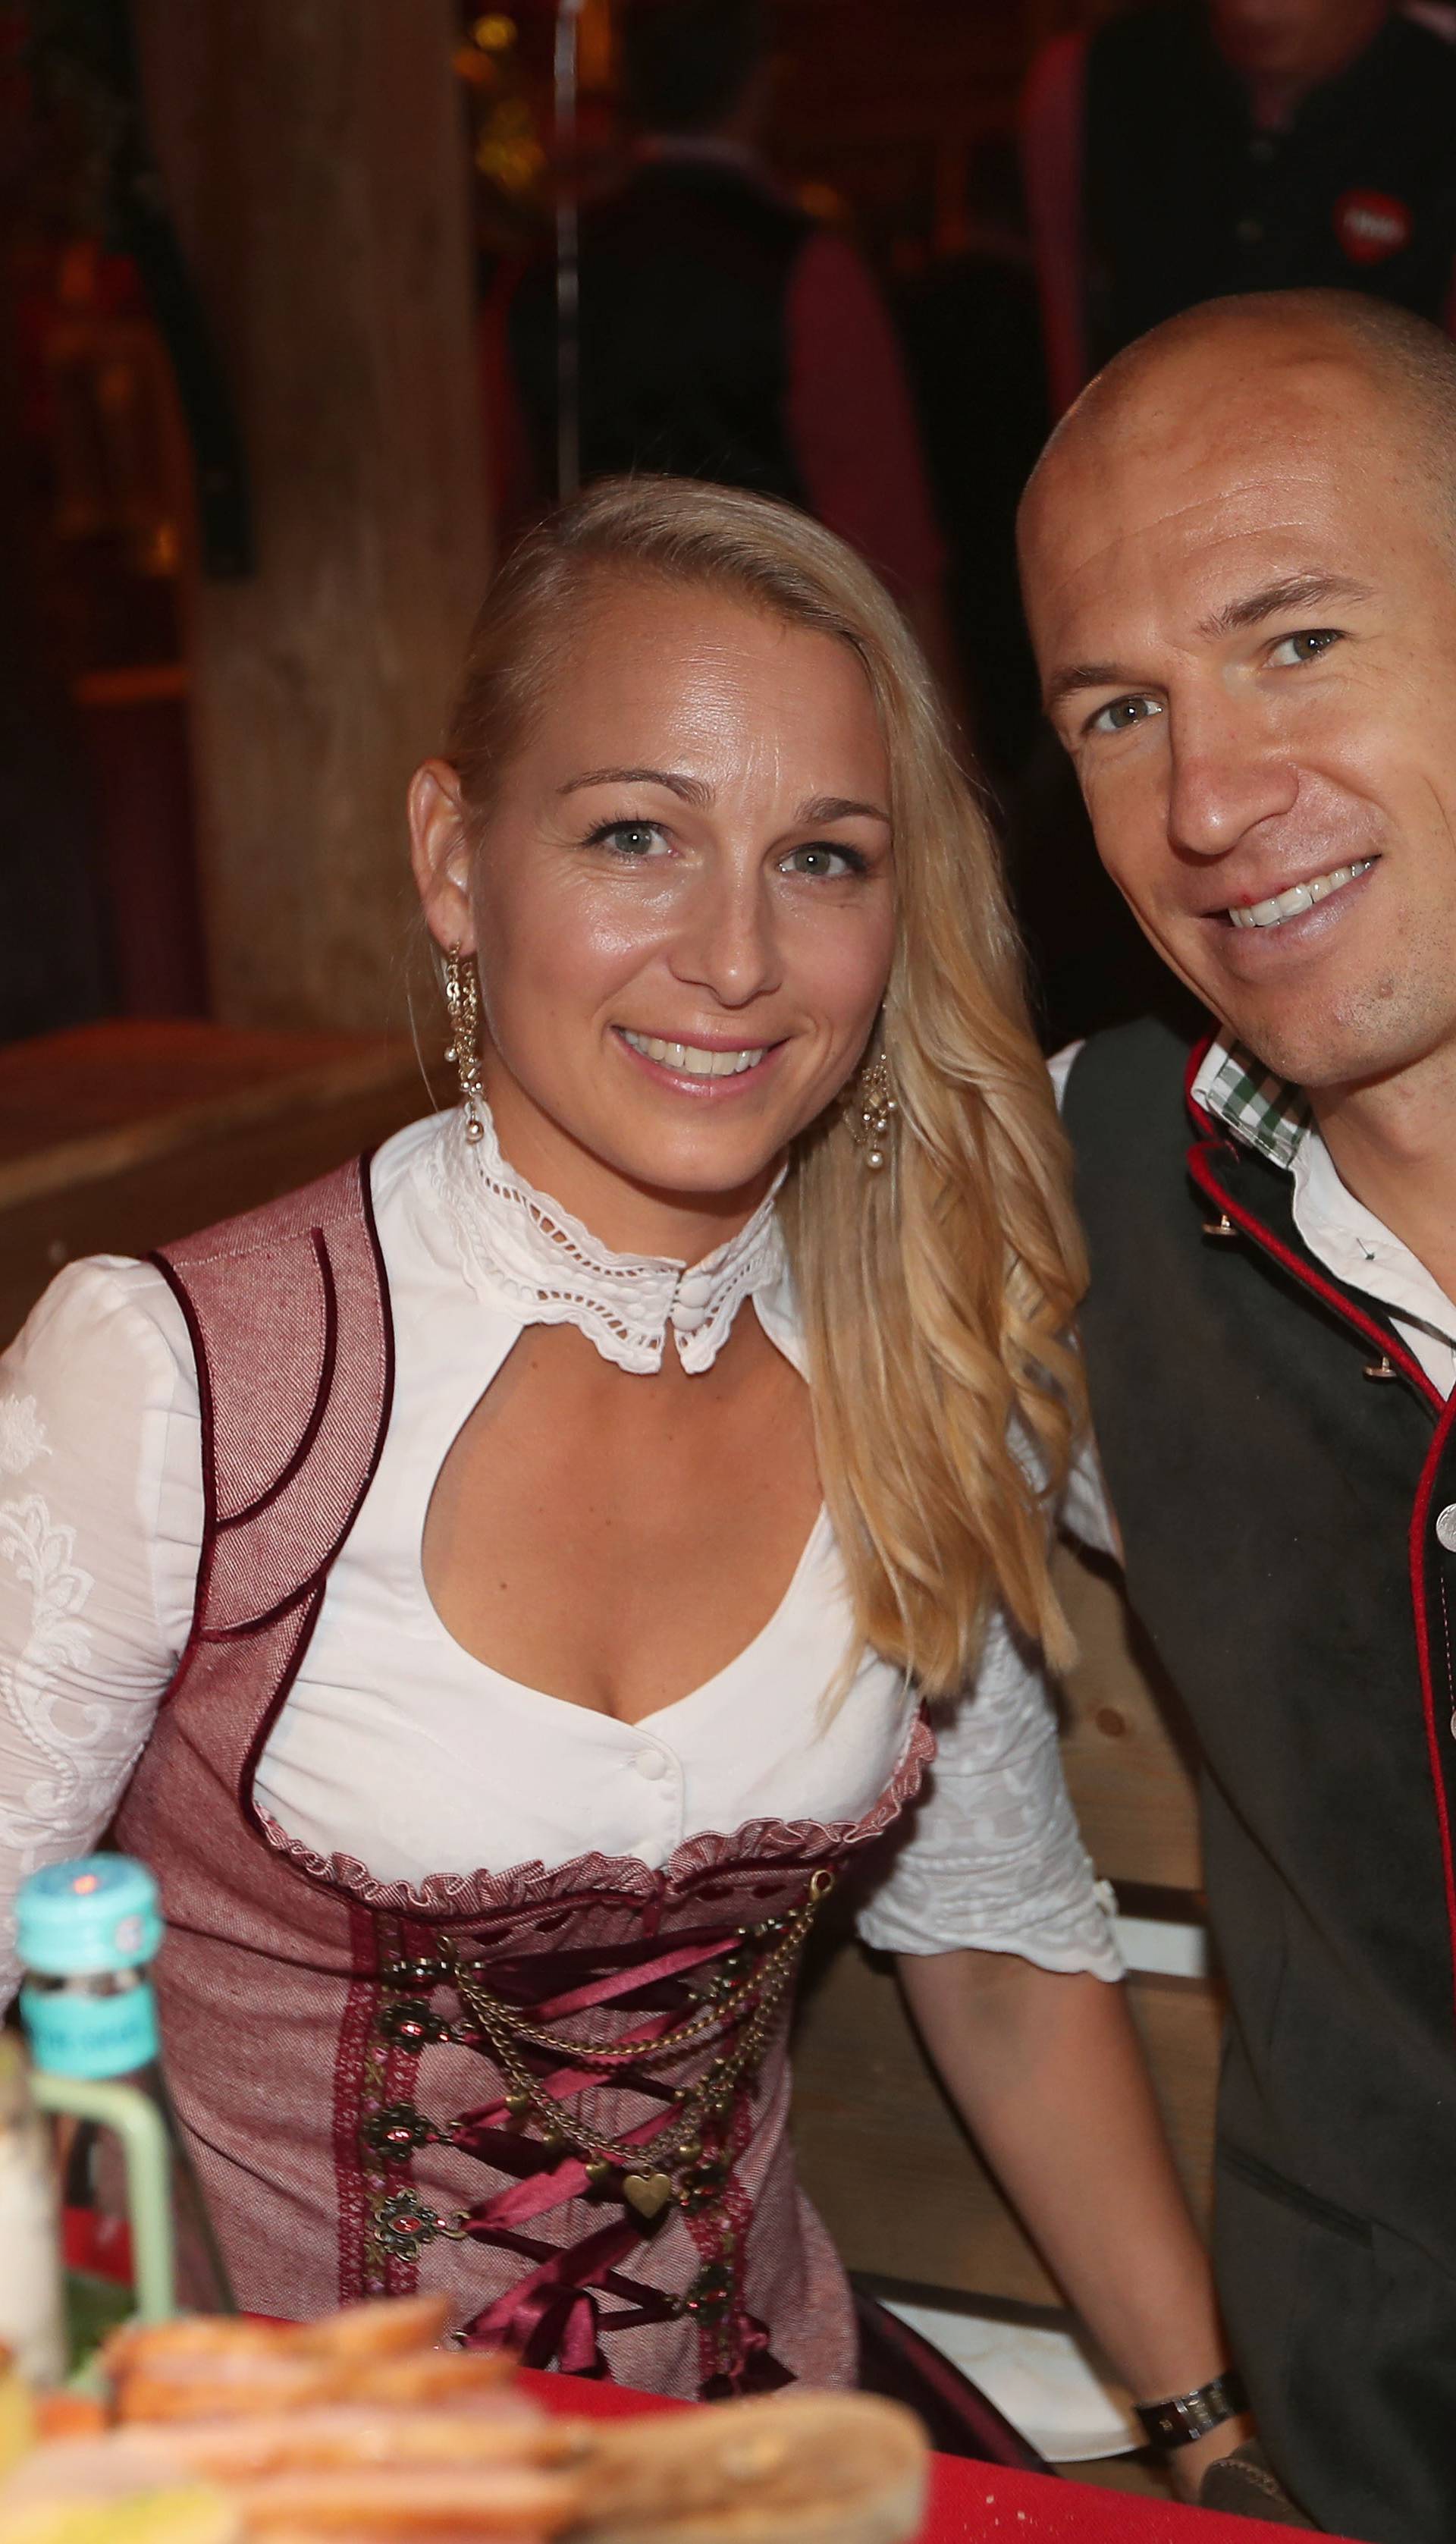 FC Bayern visits the Munich Oktoberfest